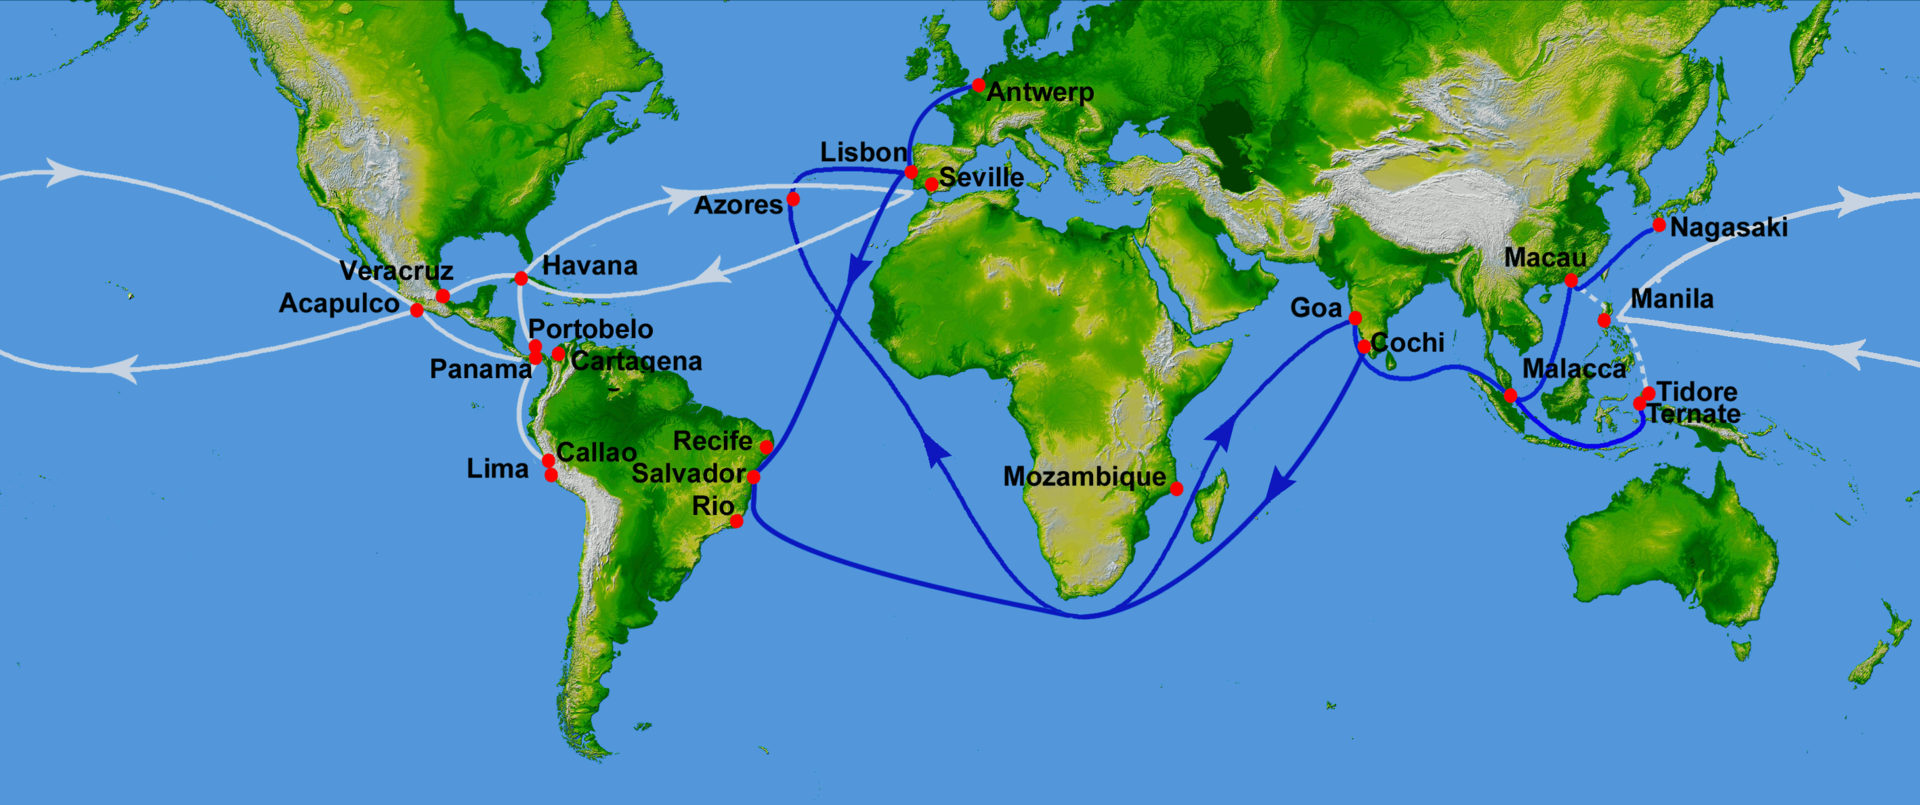 葡萄牙航海地图图片